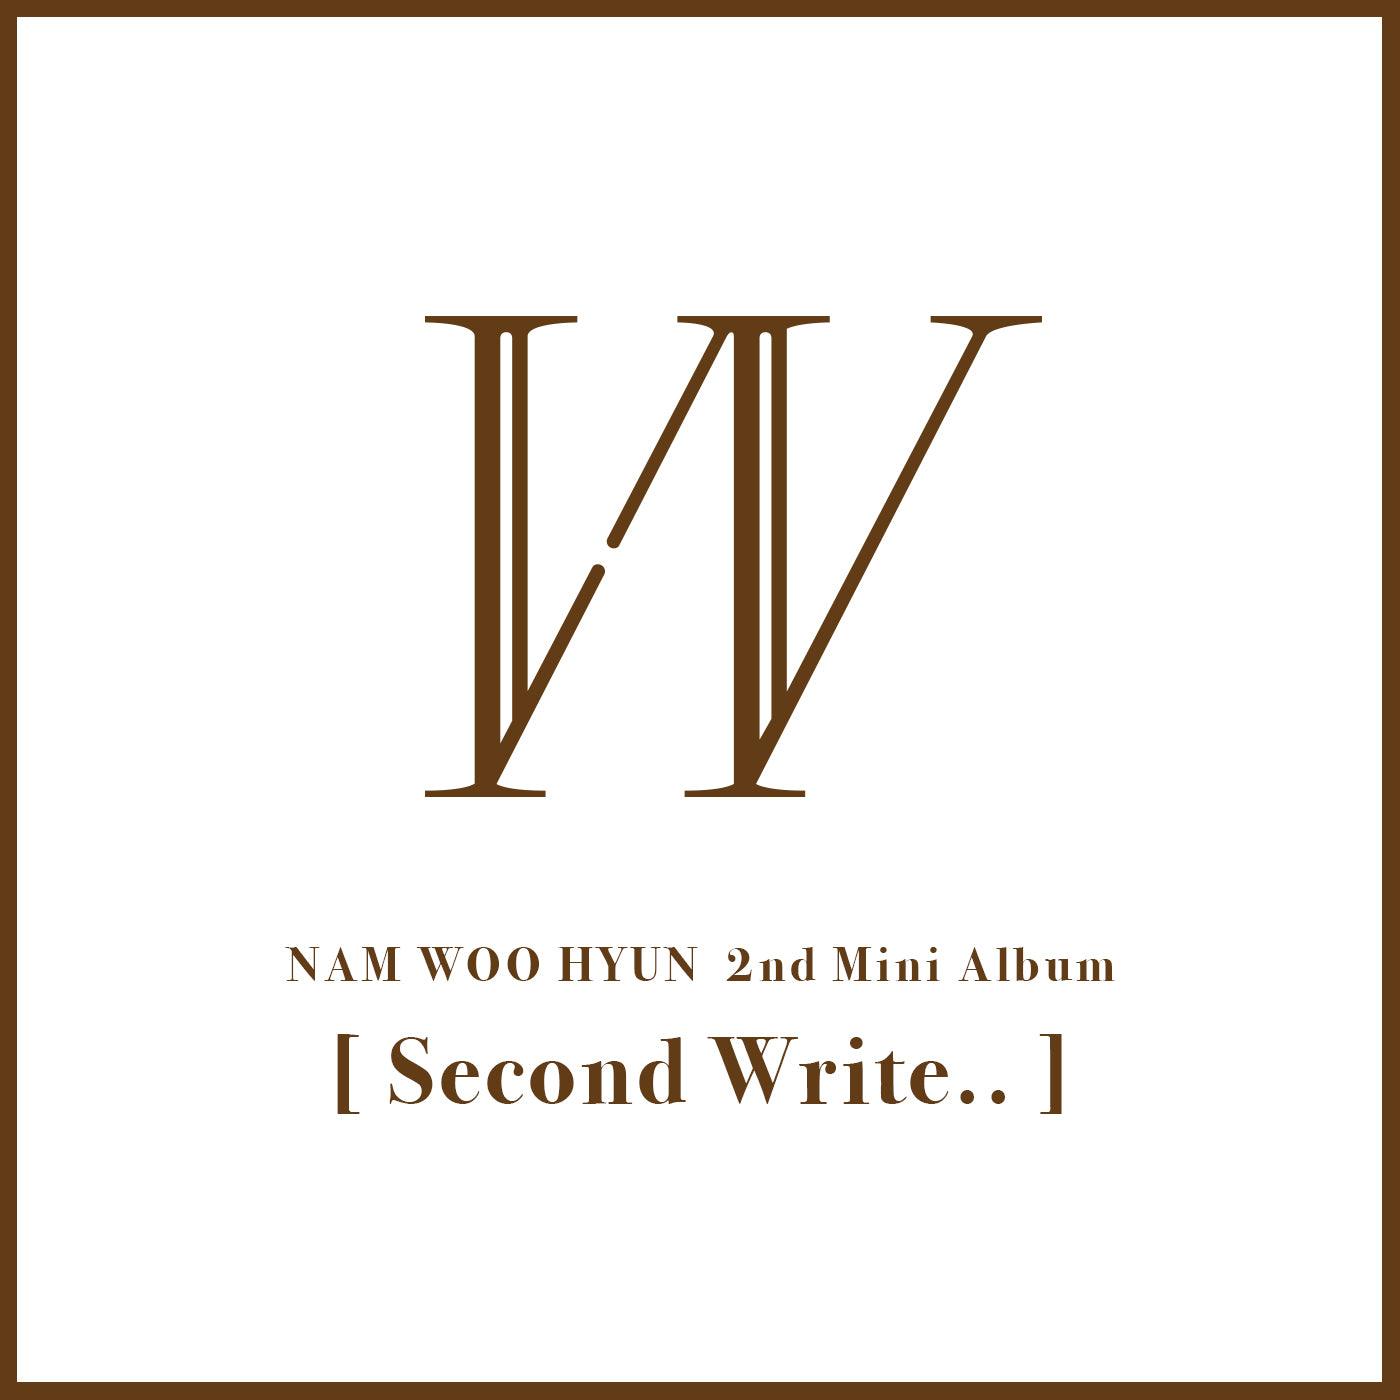 NAM WOO HYUN (INFINITE) 2ND MINI ALBUM 'SECOND WRITE..'